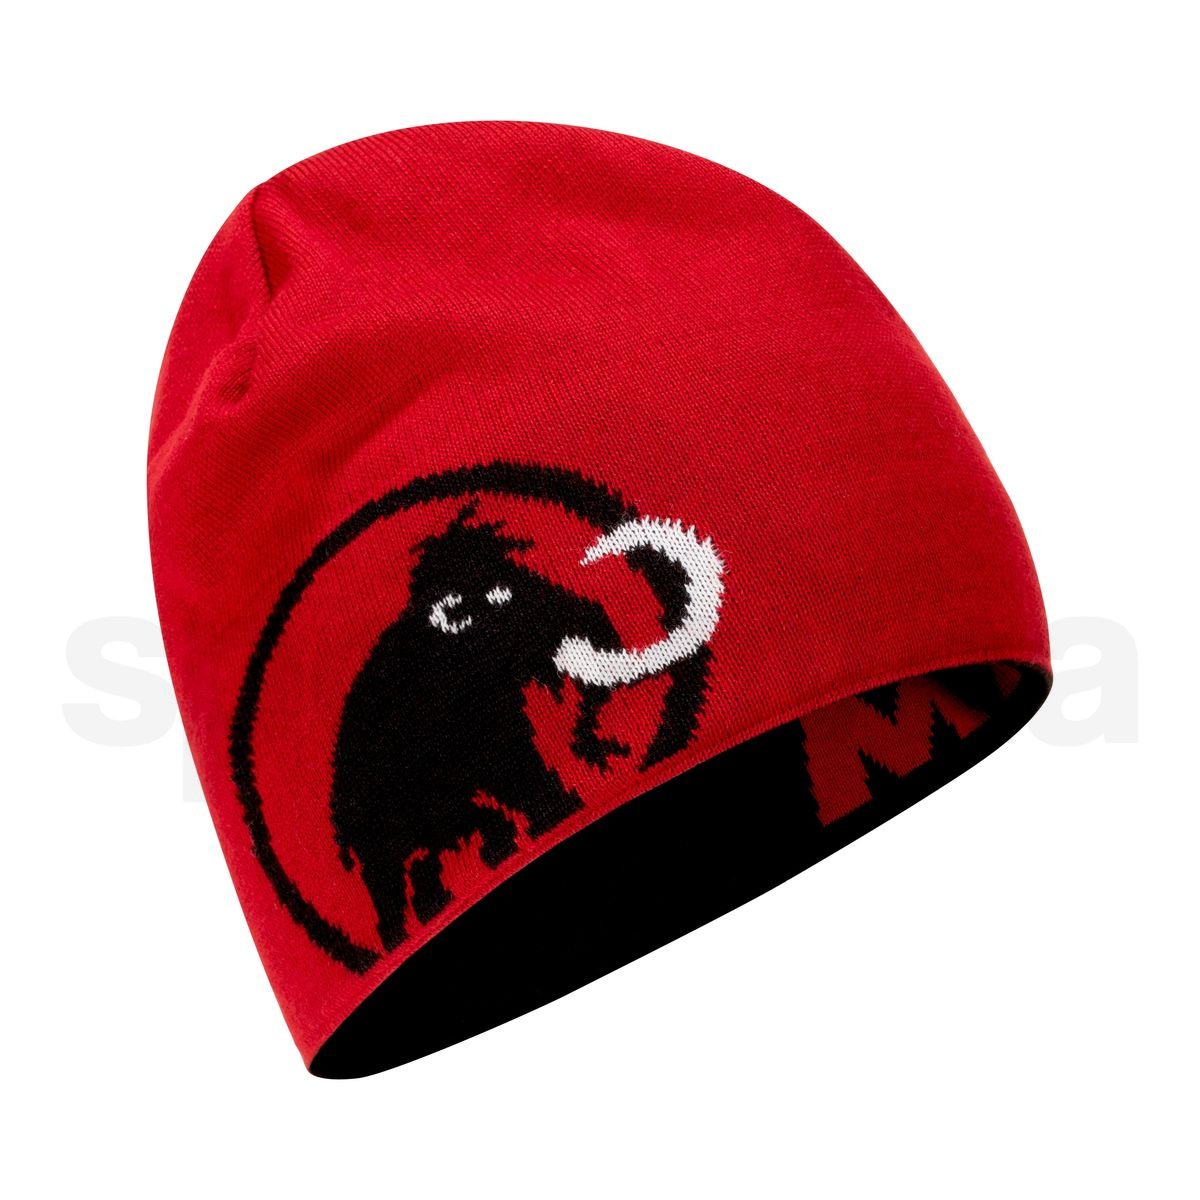 Čepice Mammut Logo Beanie - černá/červená